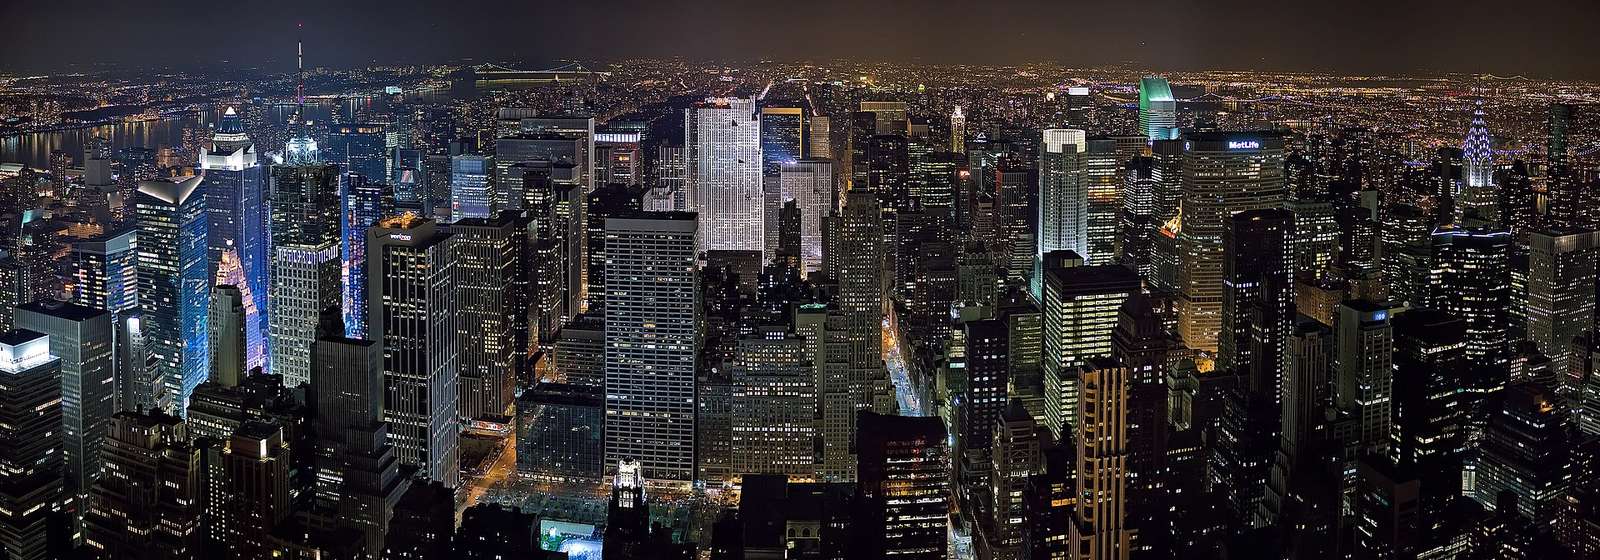 нью-йорк ночью пазл онлайн